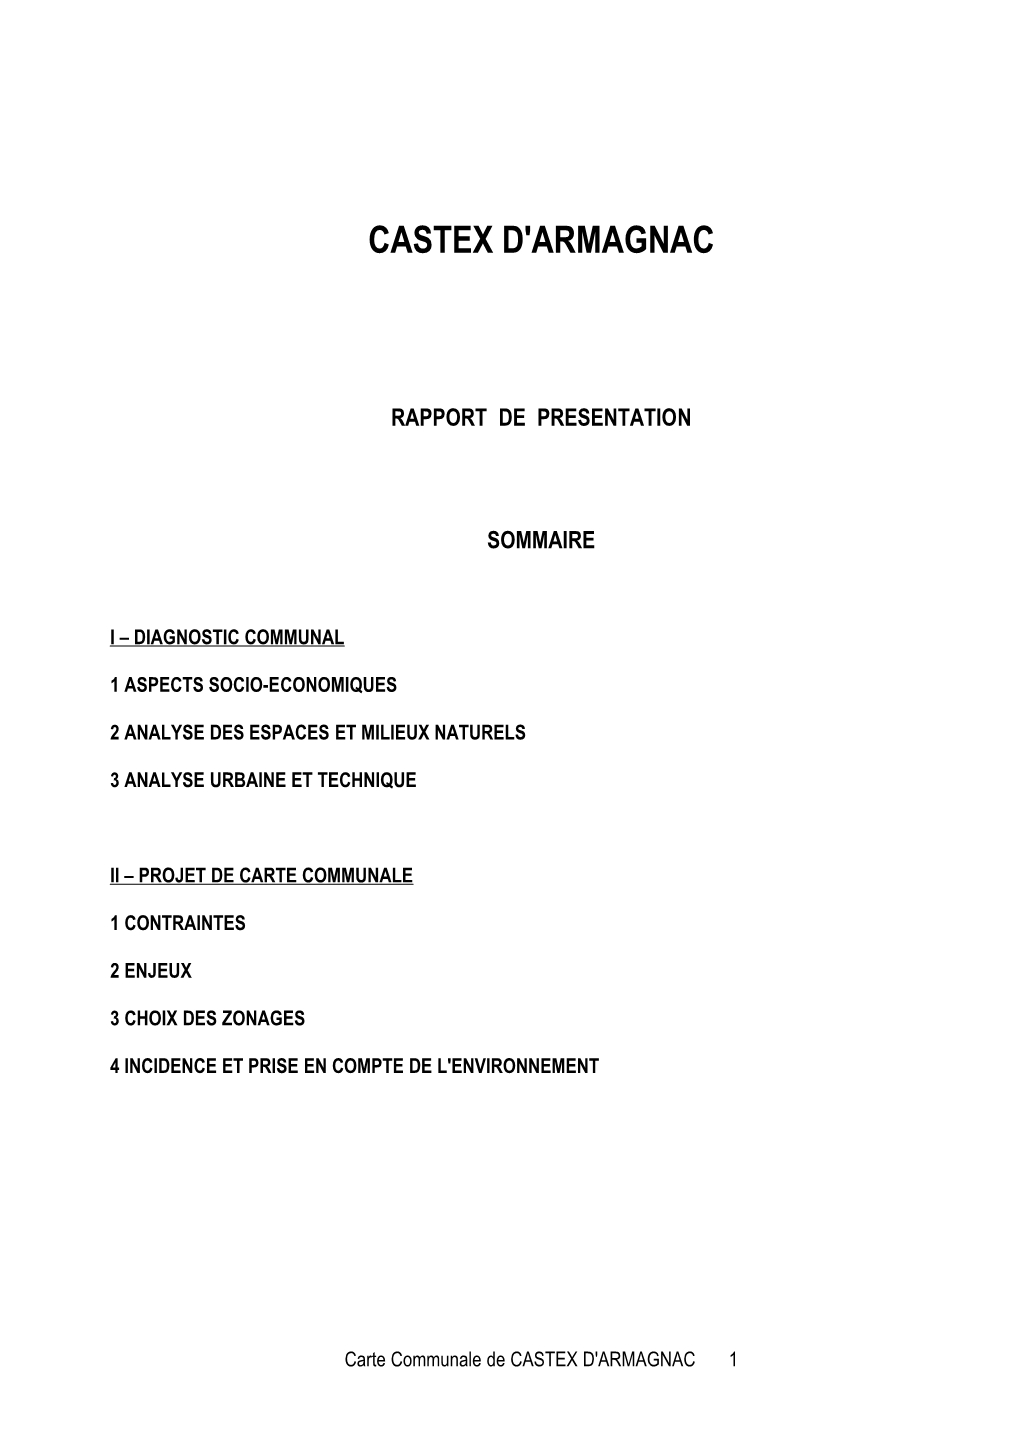 Castex D'armagnac